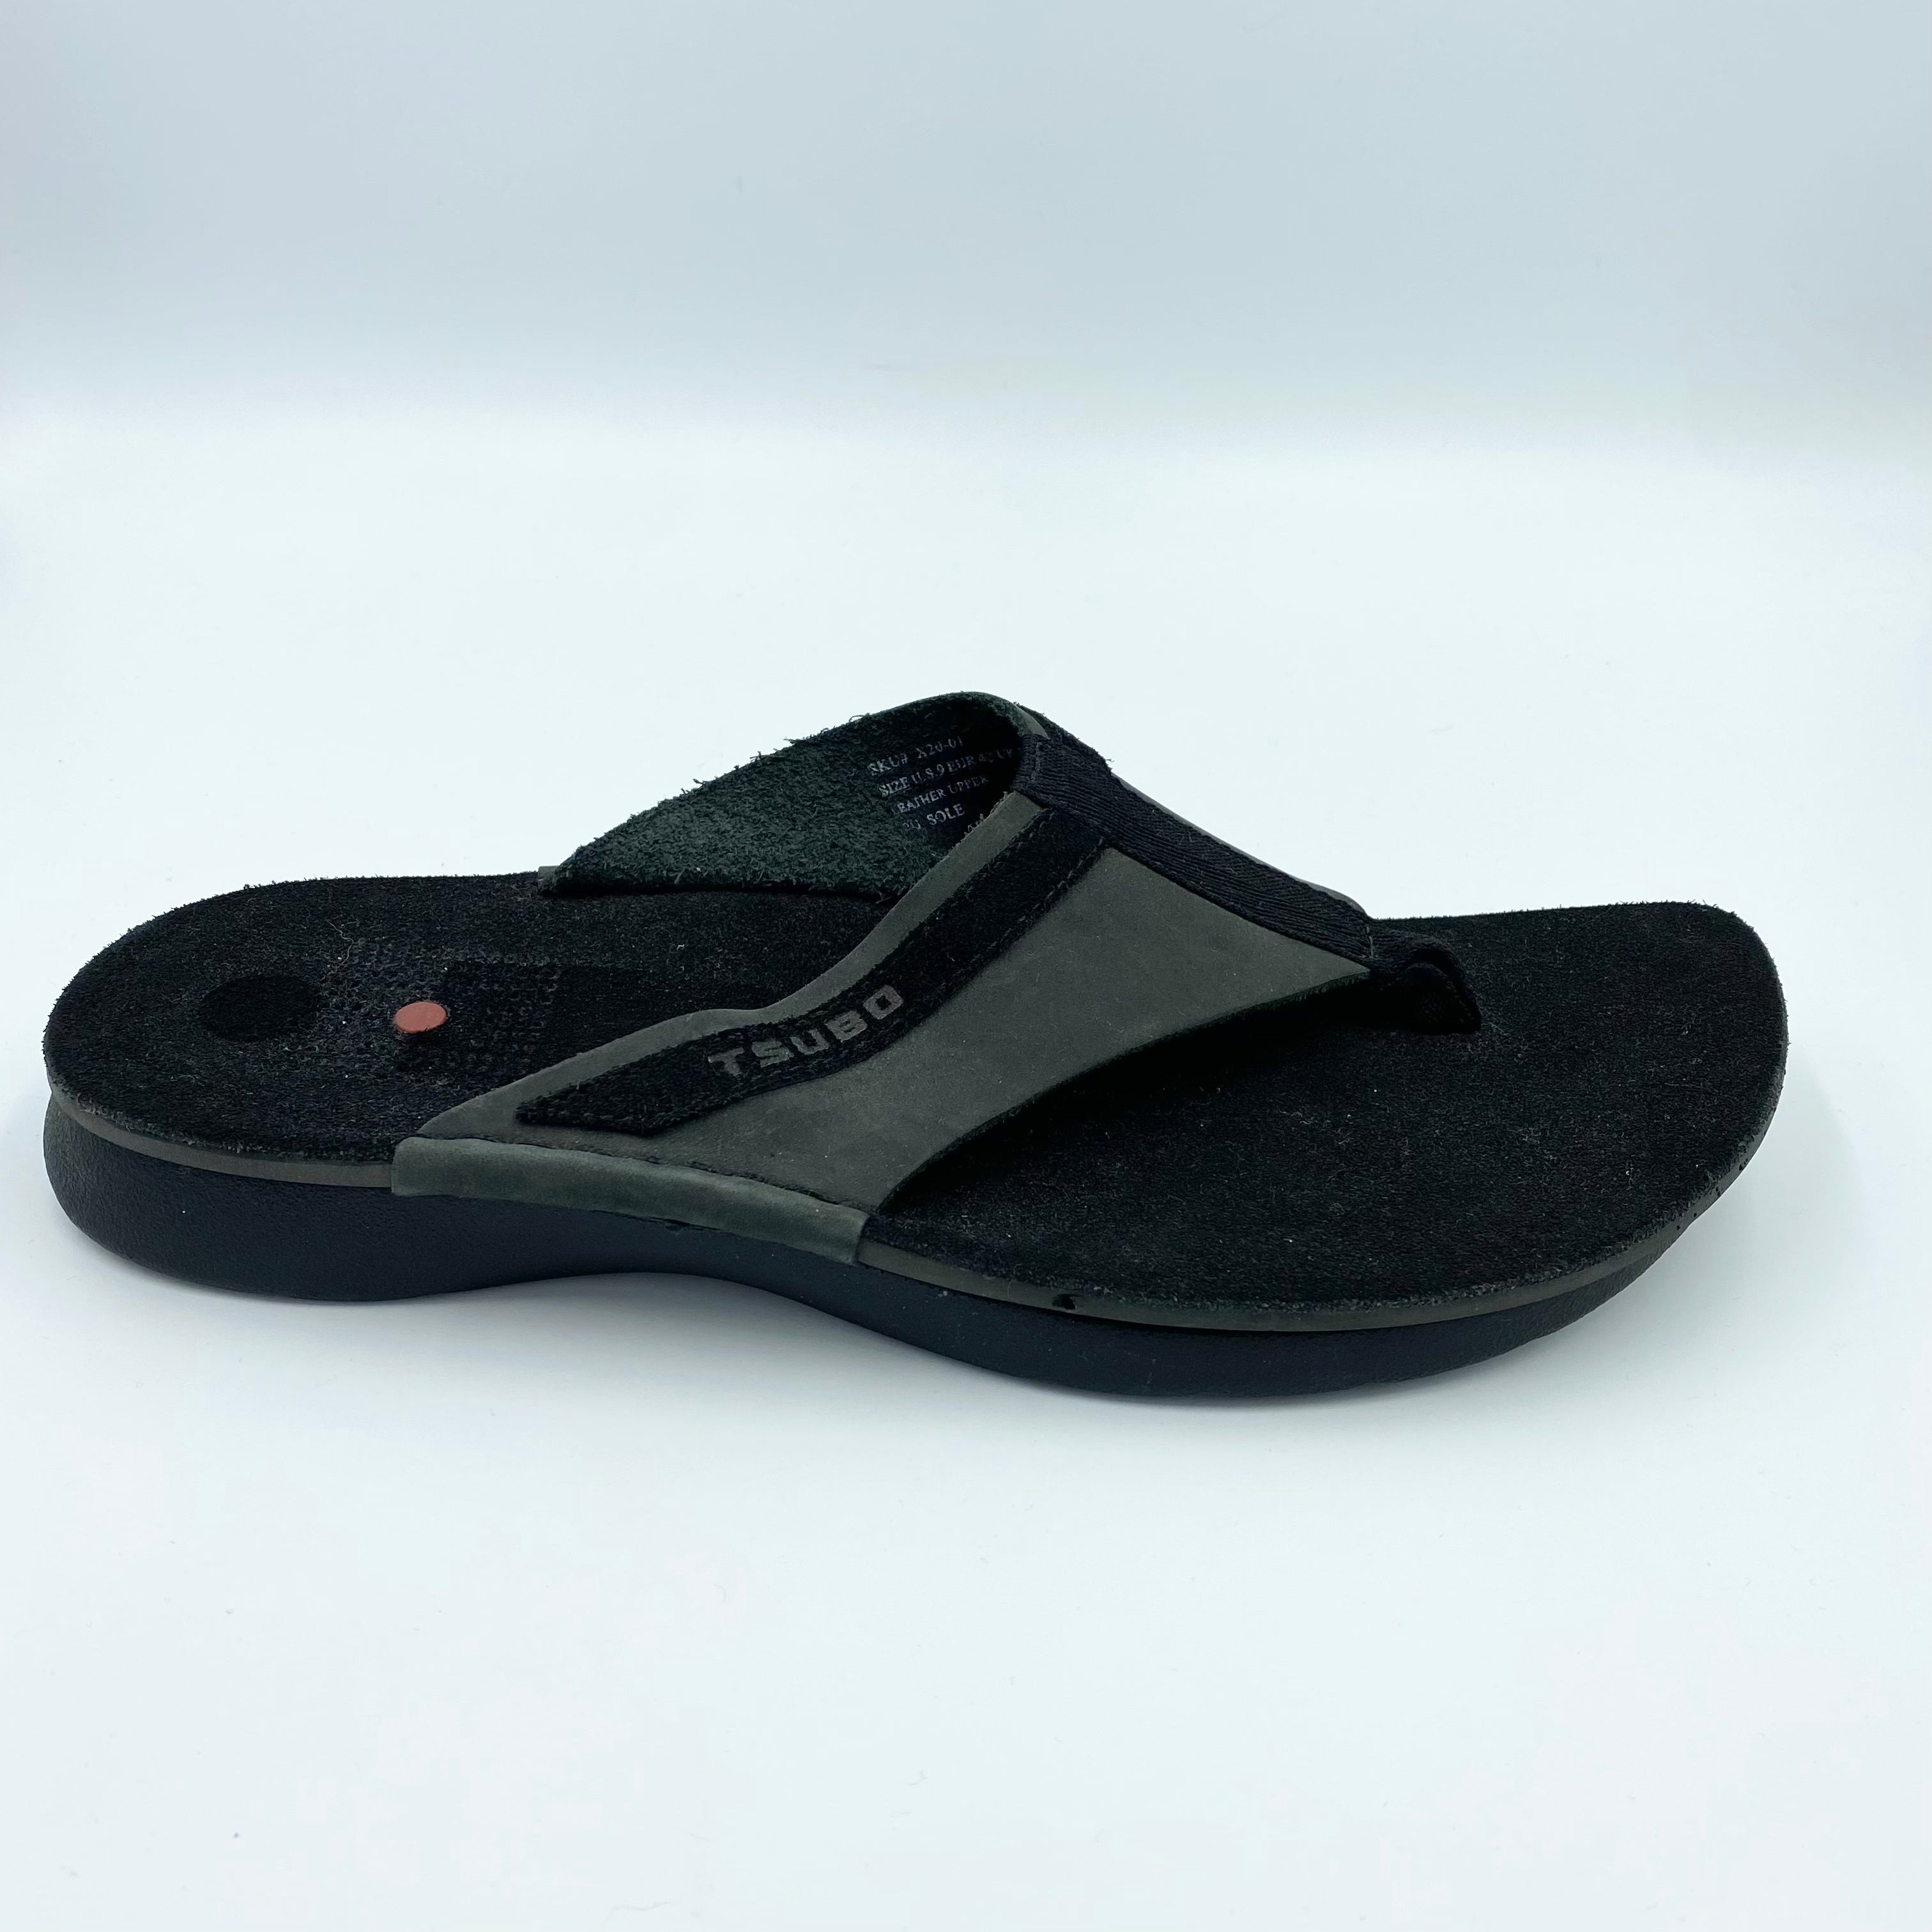 TSUBO Plex Sandal - 0